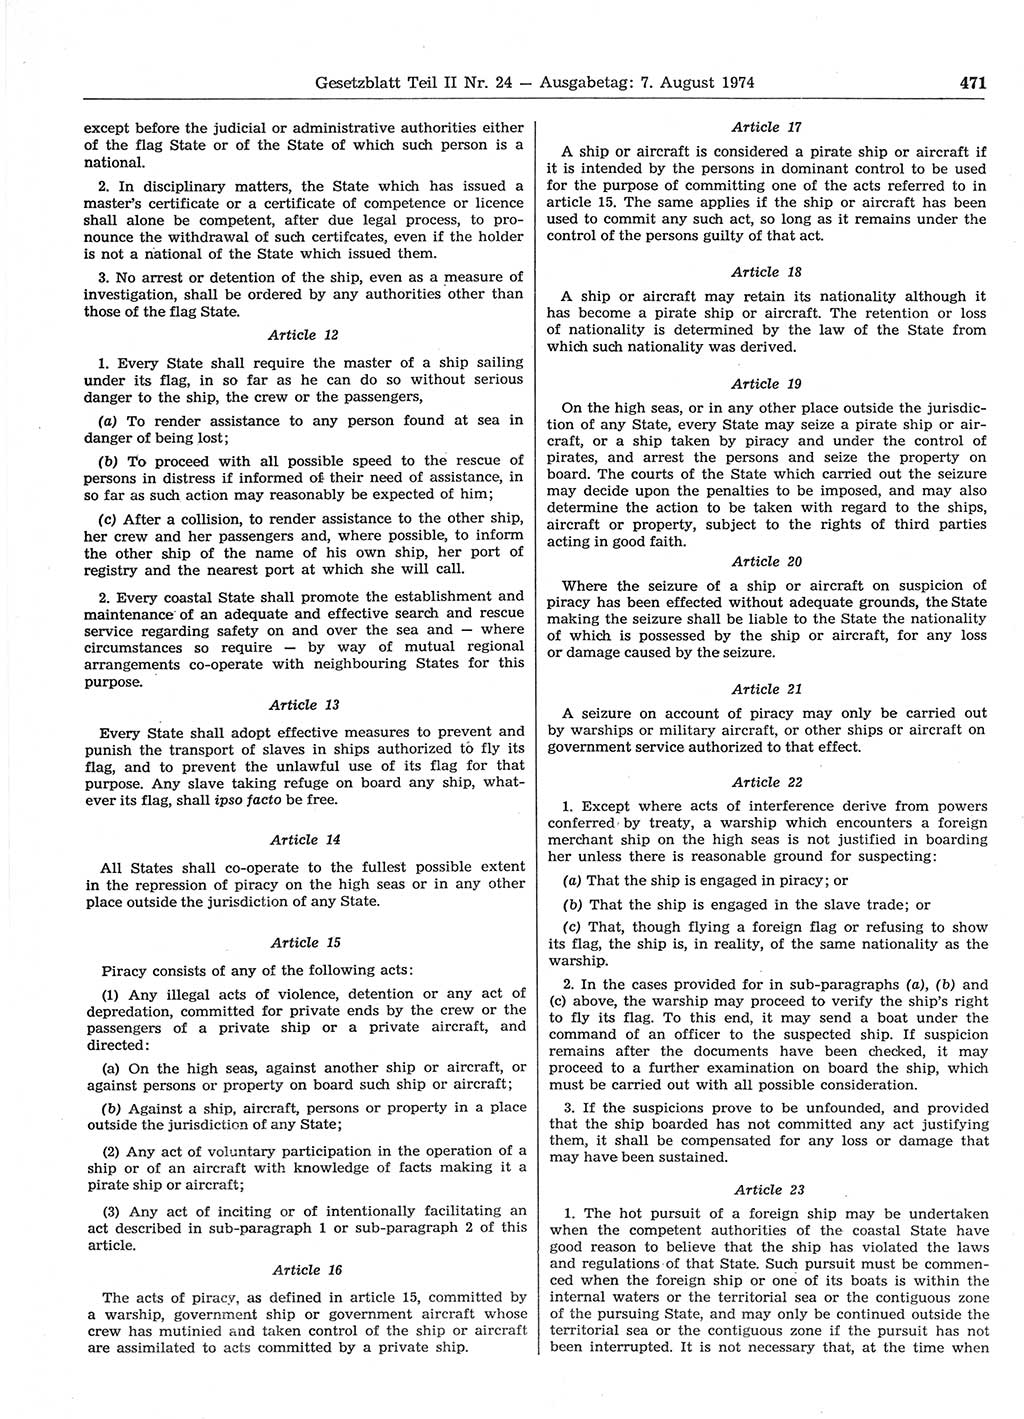 Gesetzblatt (GBl.) der Deutschen Demokratischen Republik (DDR) Teil ⅠⅠ 1974, Seite 471 (GBl. DDR ⅠⅠ 1974, S. 471)